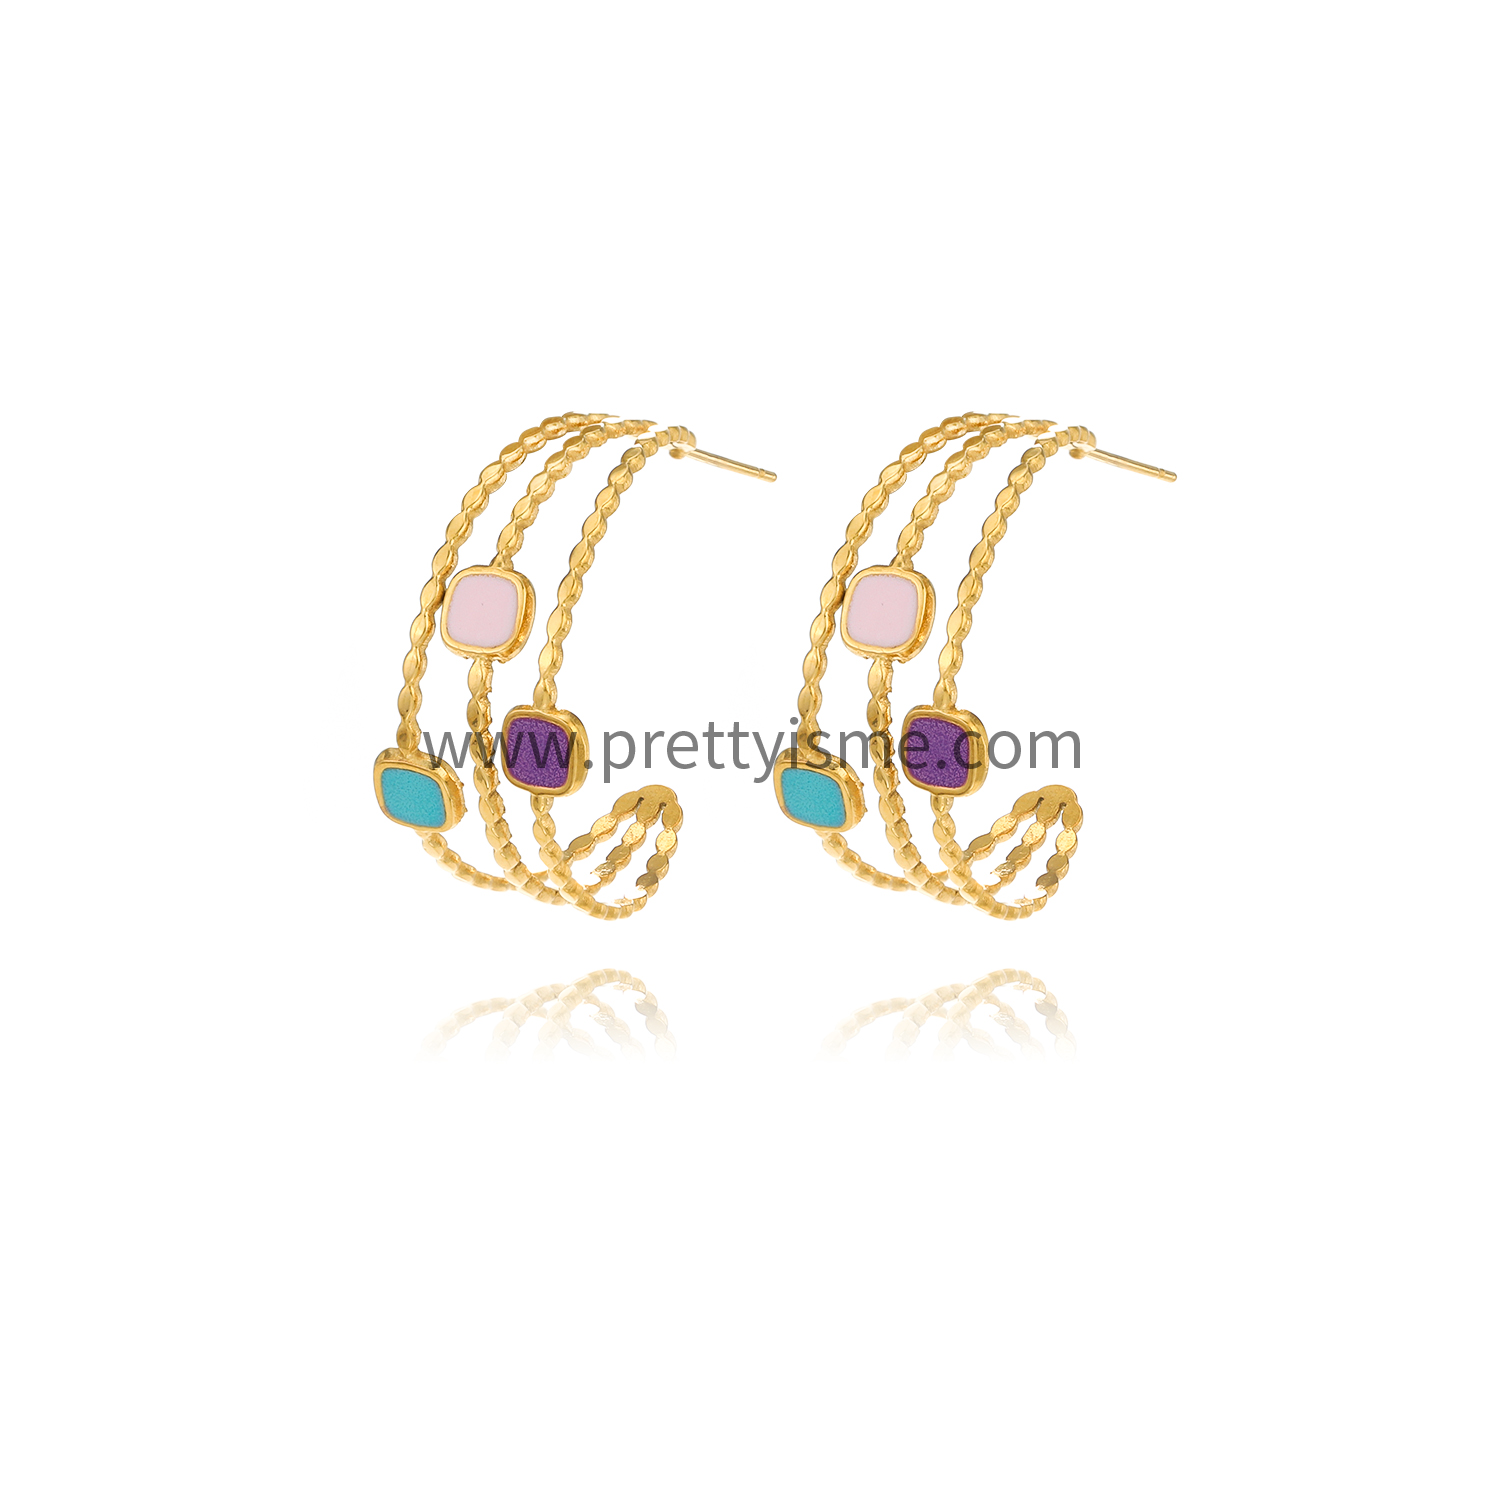 Enamel Multicolored Open Stainless Steel Earrings Gold Plated 18K Earrings (5).webp